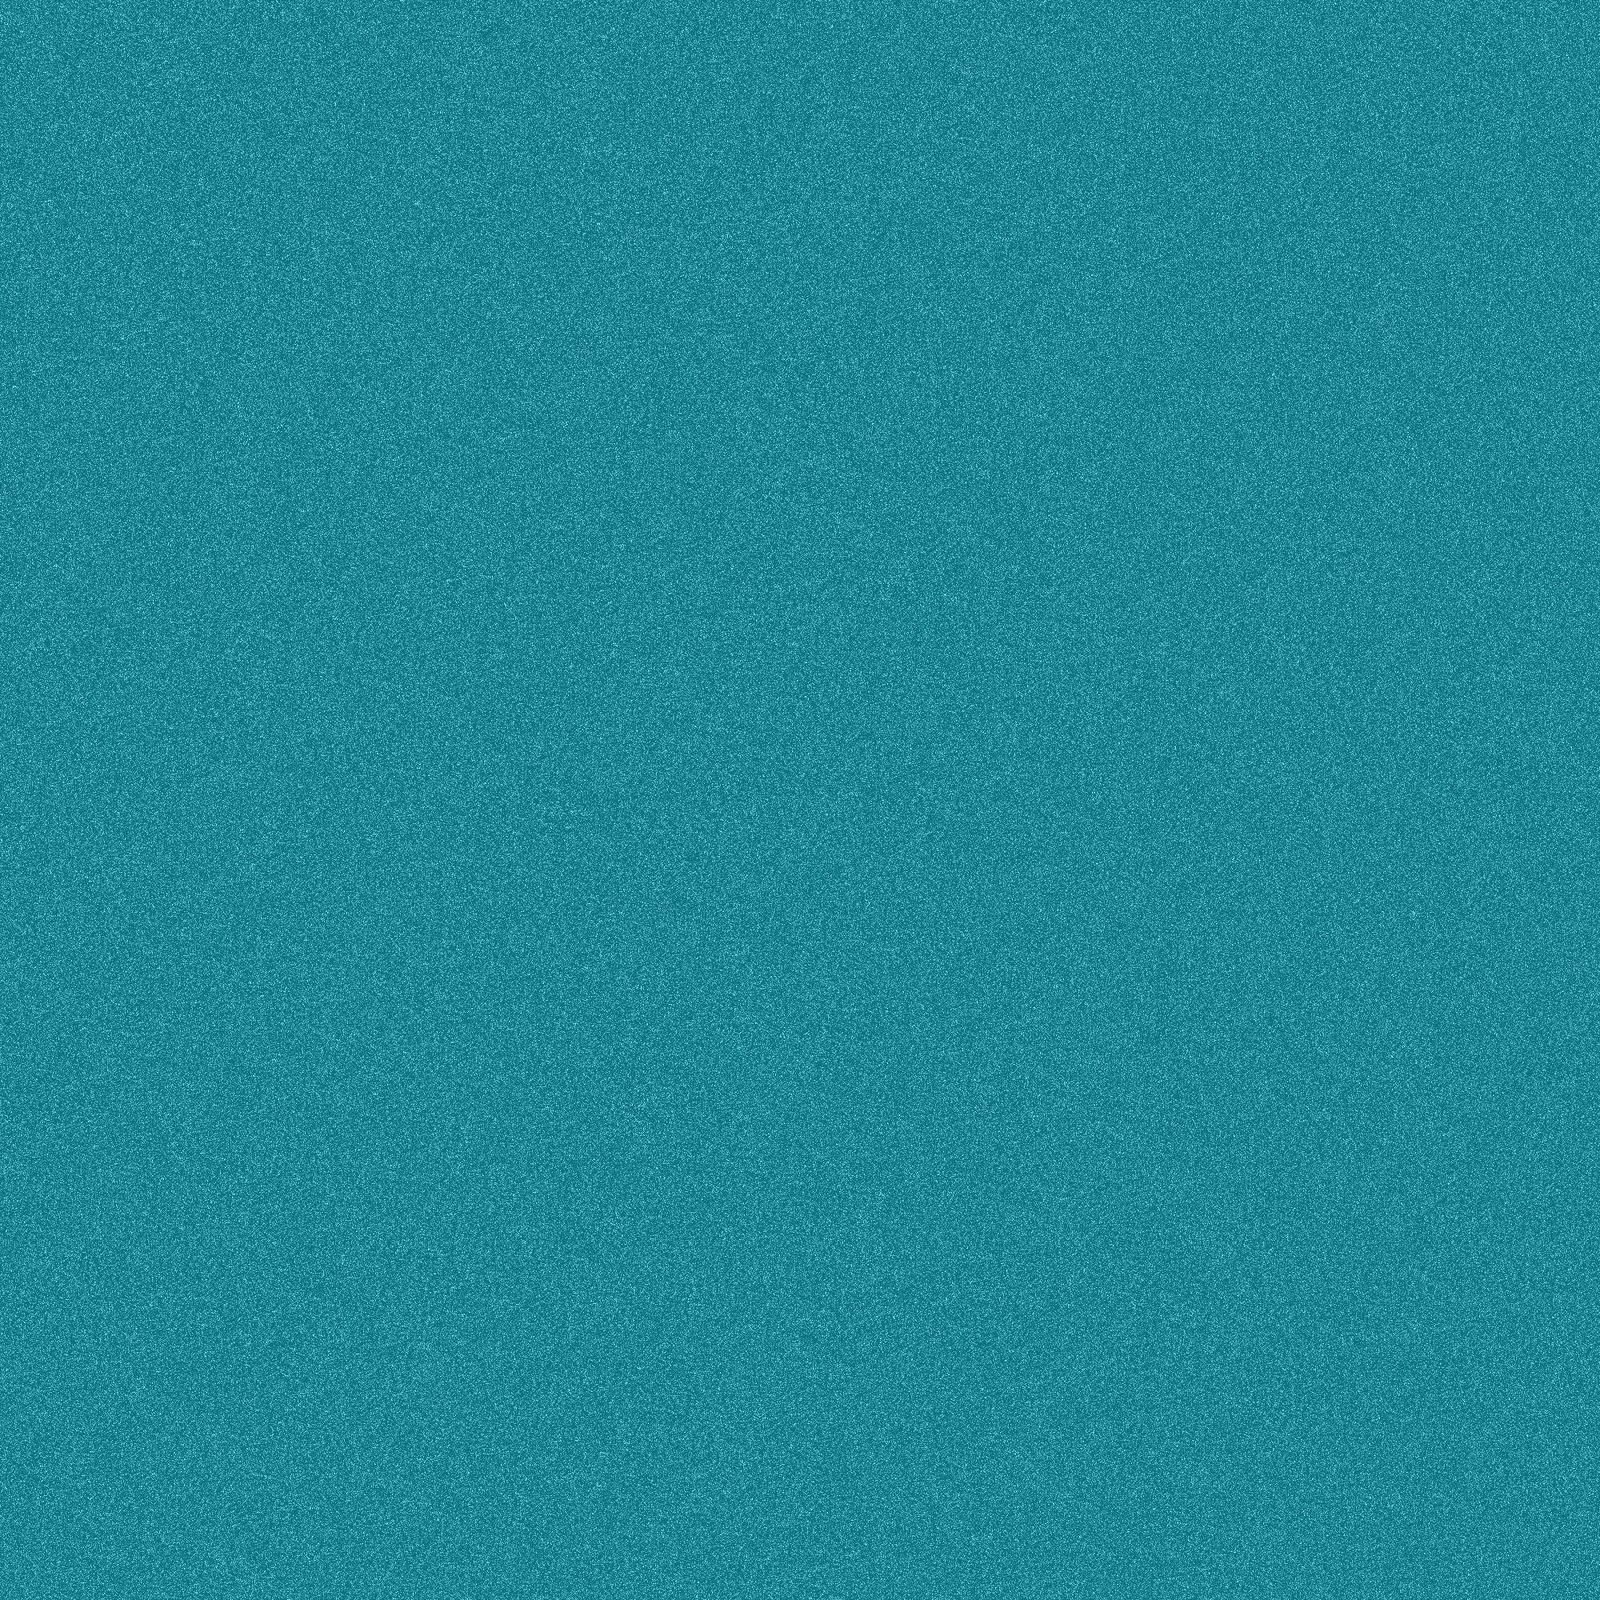 Turquoise blue" Noise background texture. PNG:Public Domain